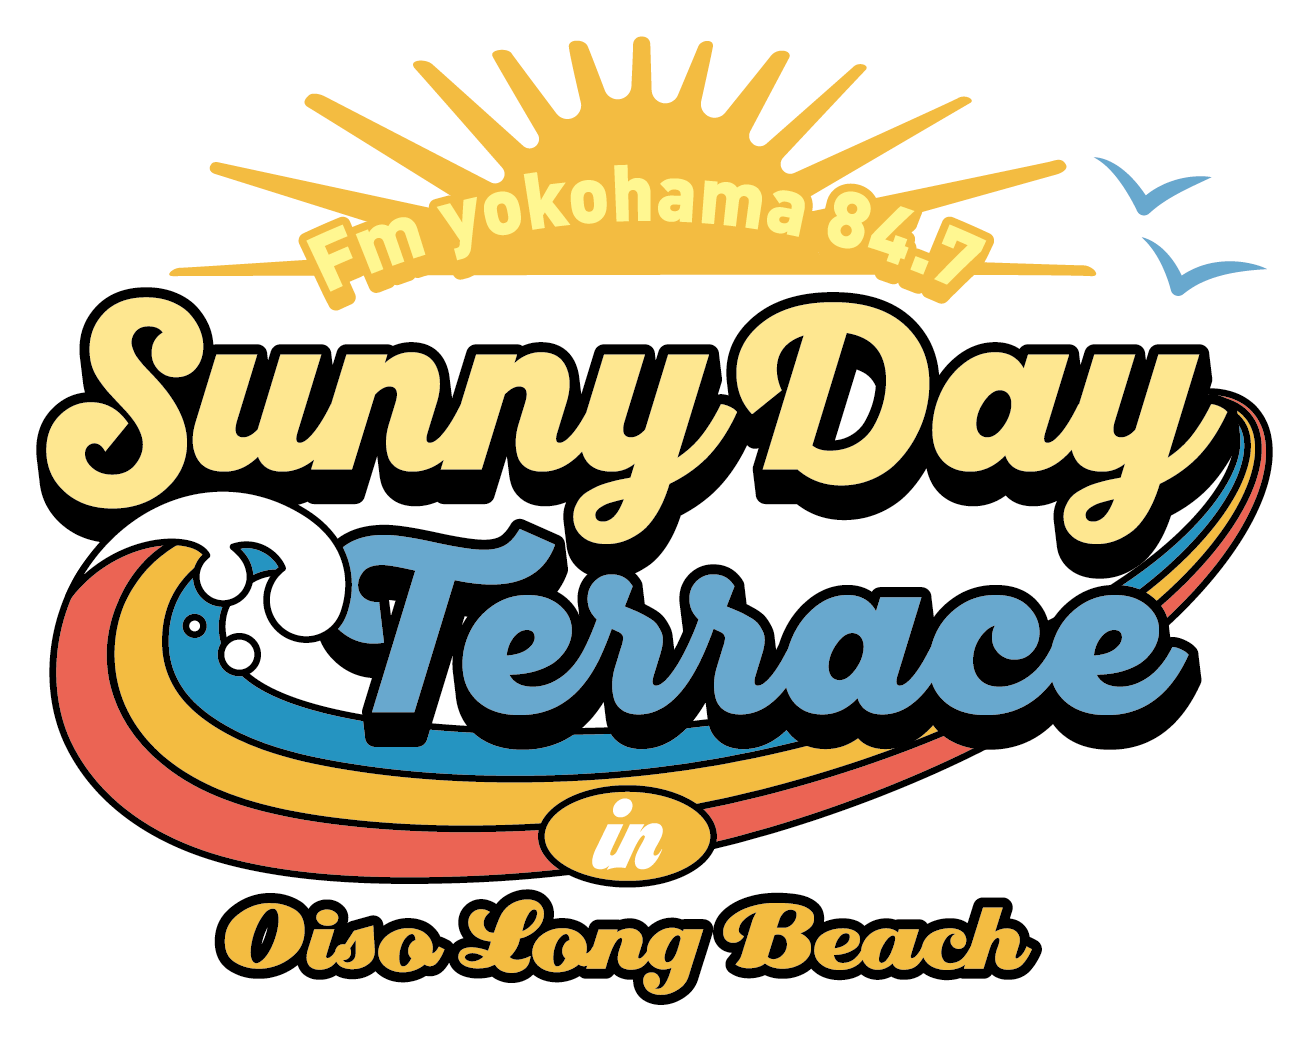 Fm yokohama84.7 Sunny Day Terrace in Oiso Long Beach | Fm yokohama 84.7